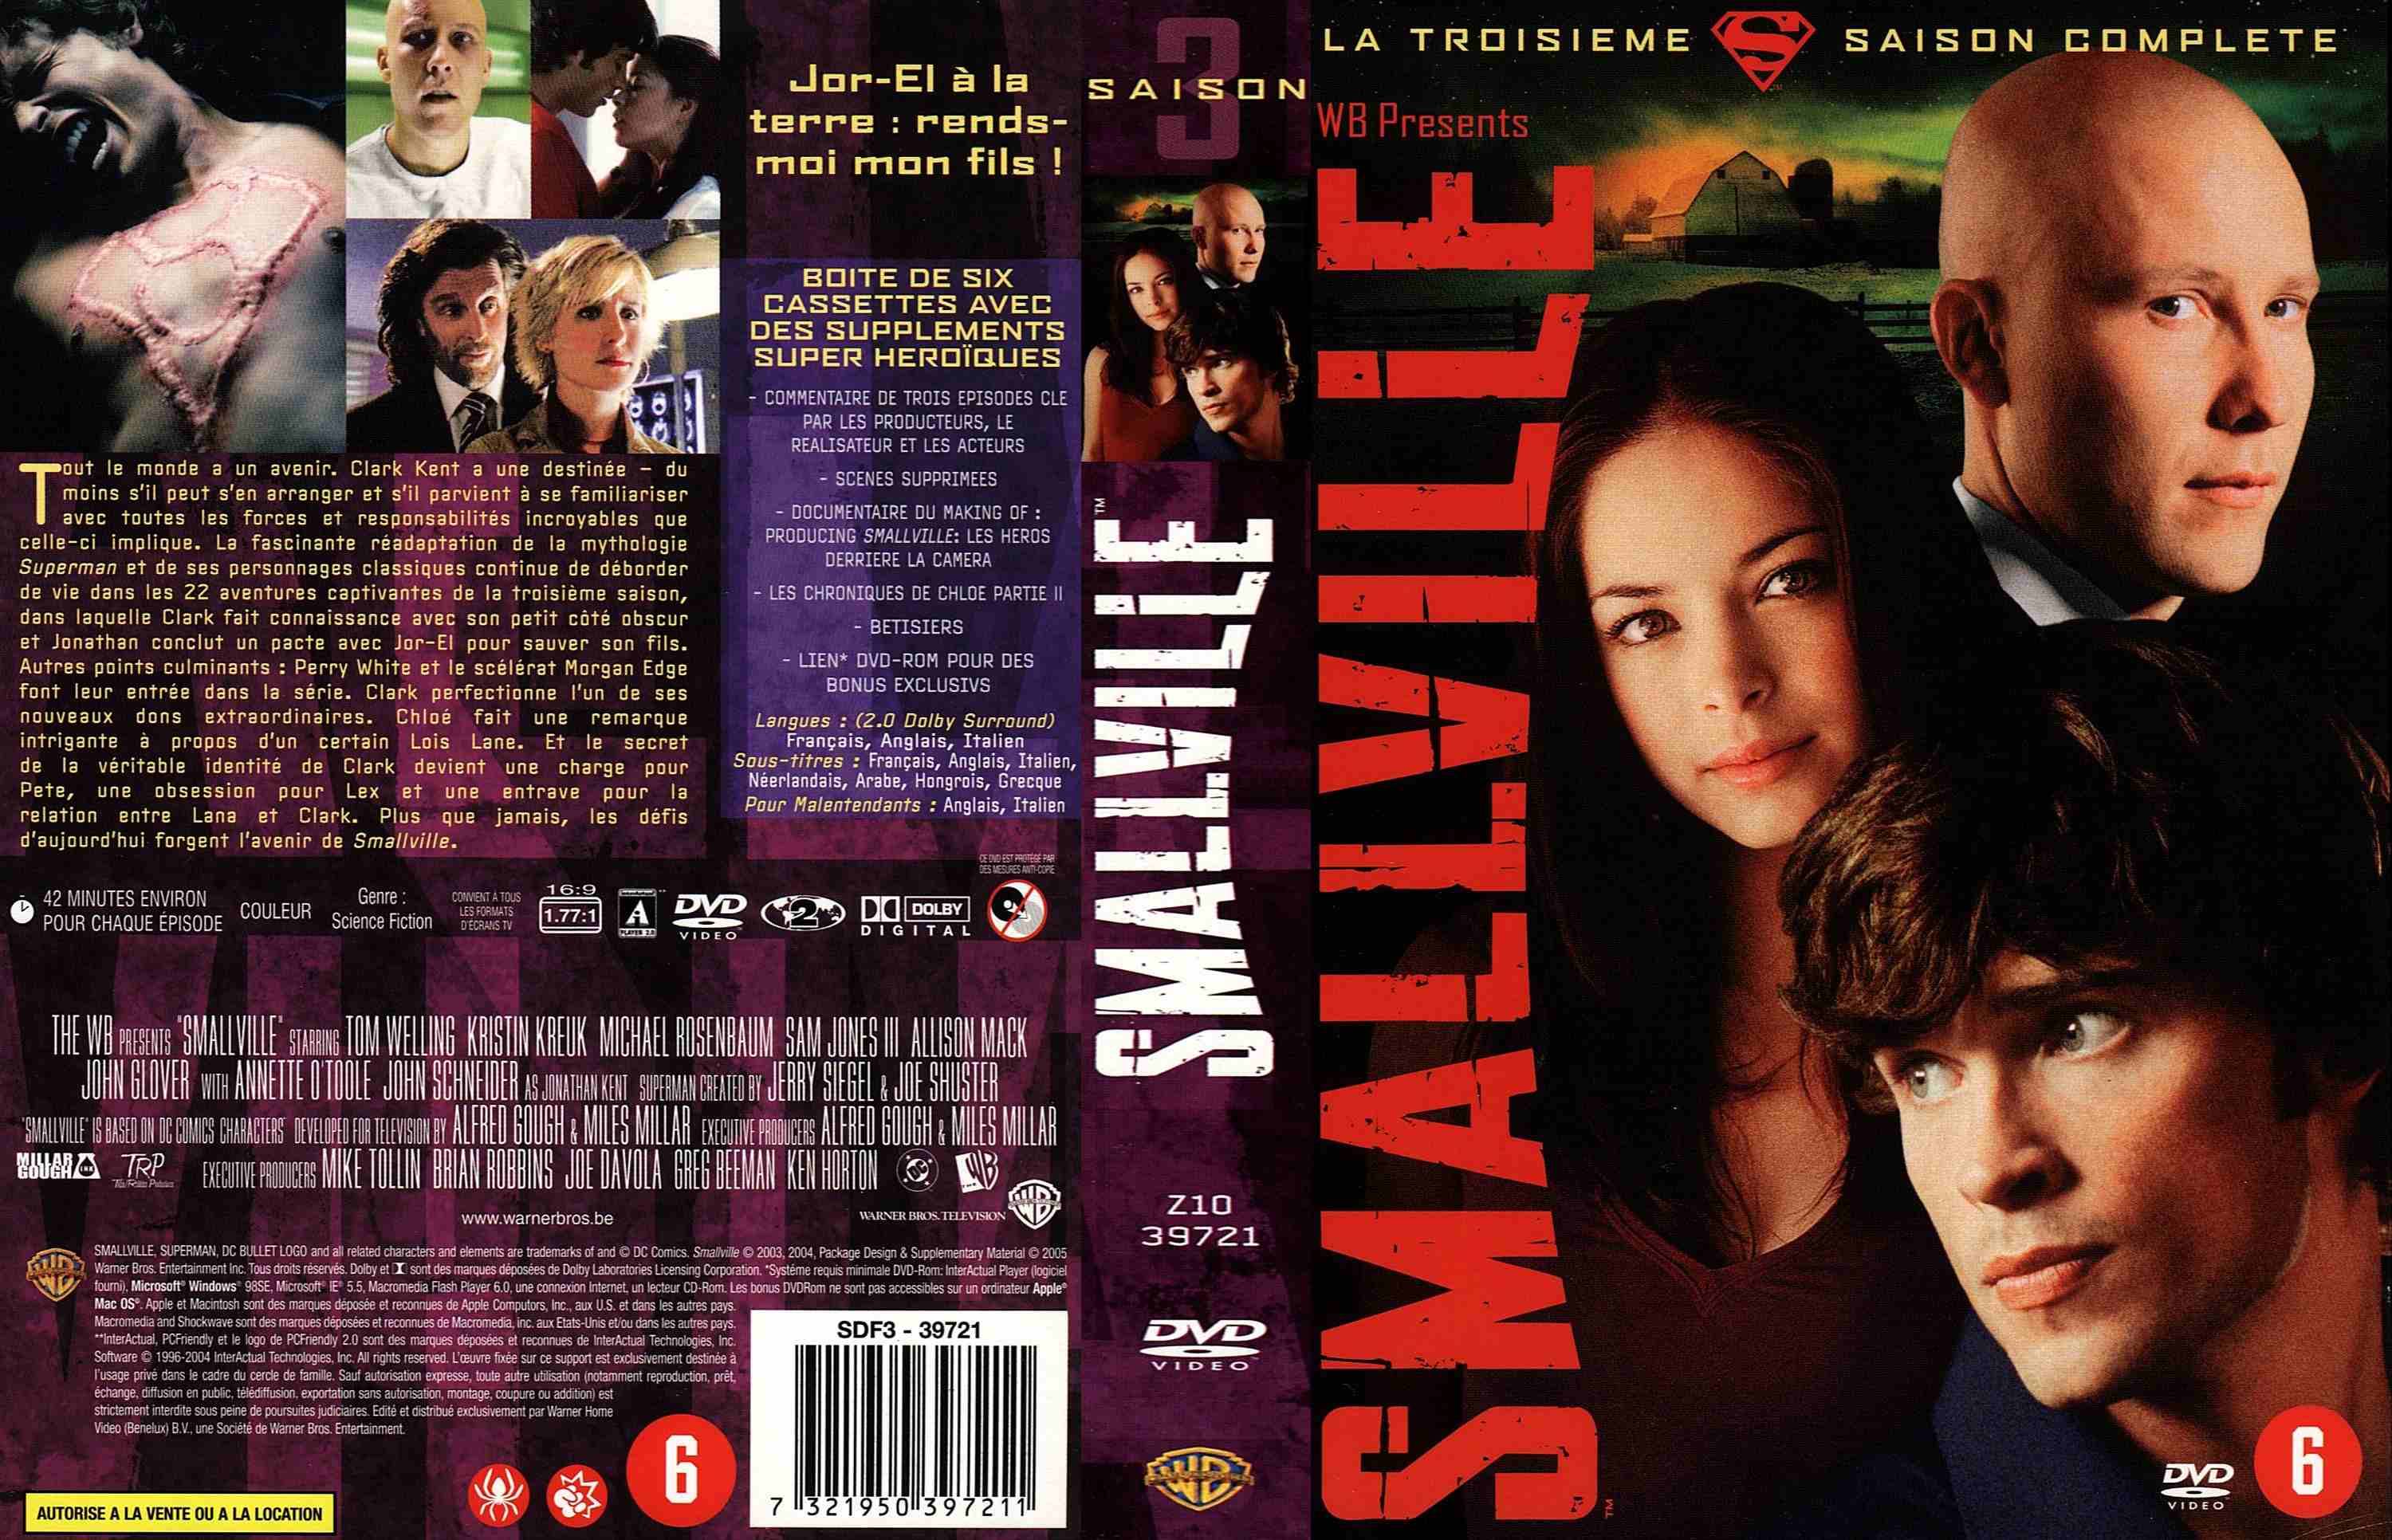 Jaquette DVD Smallville saison 3 COFFRET